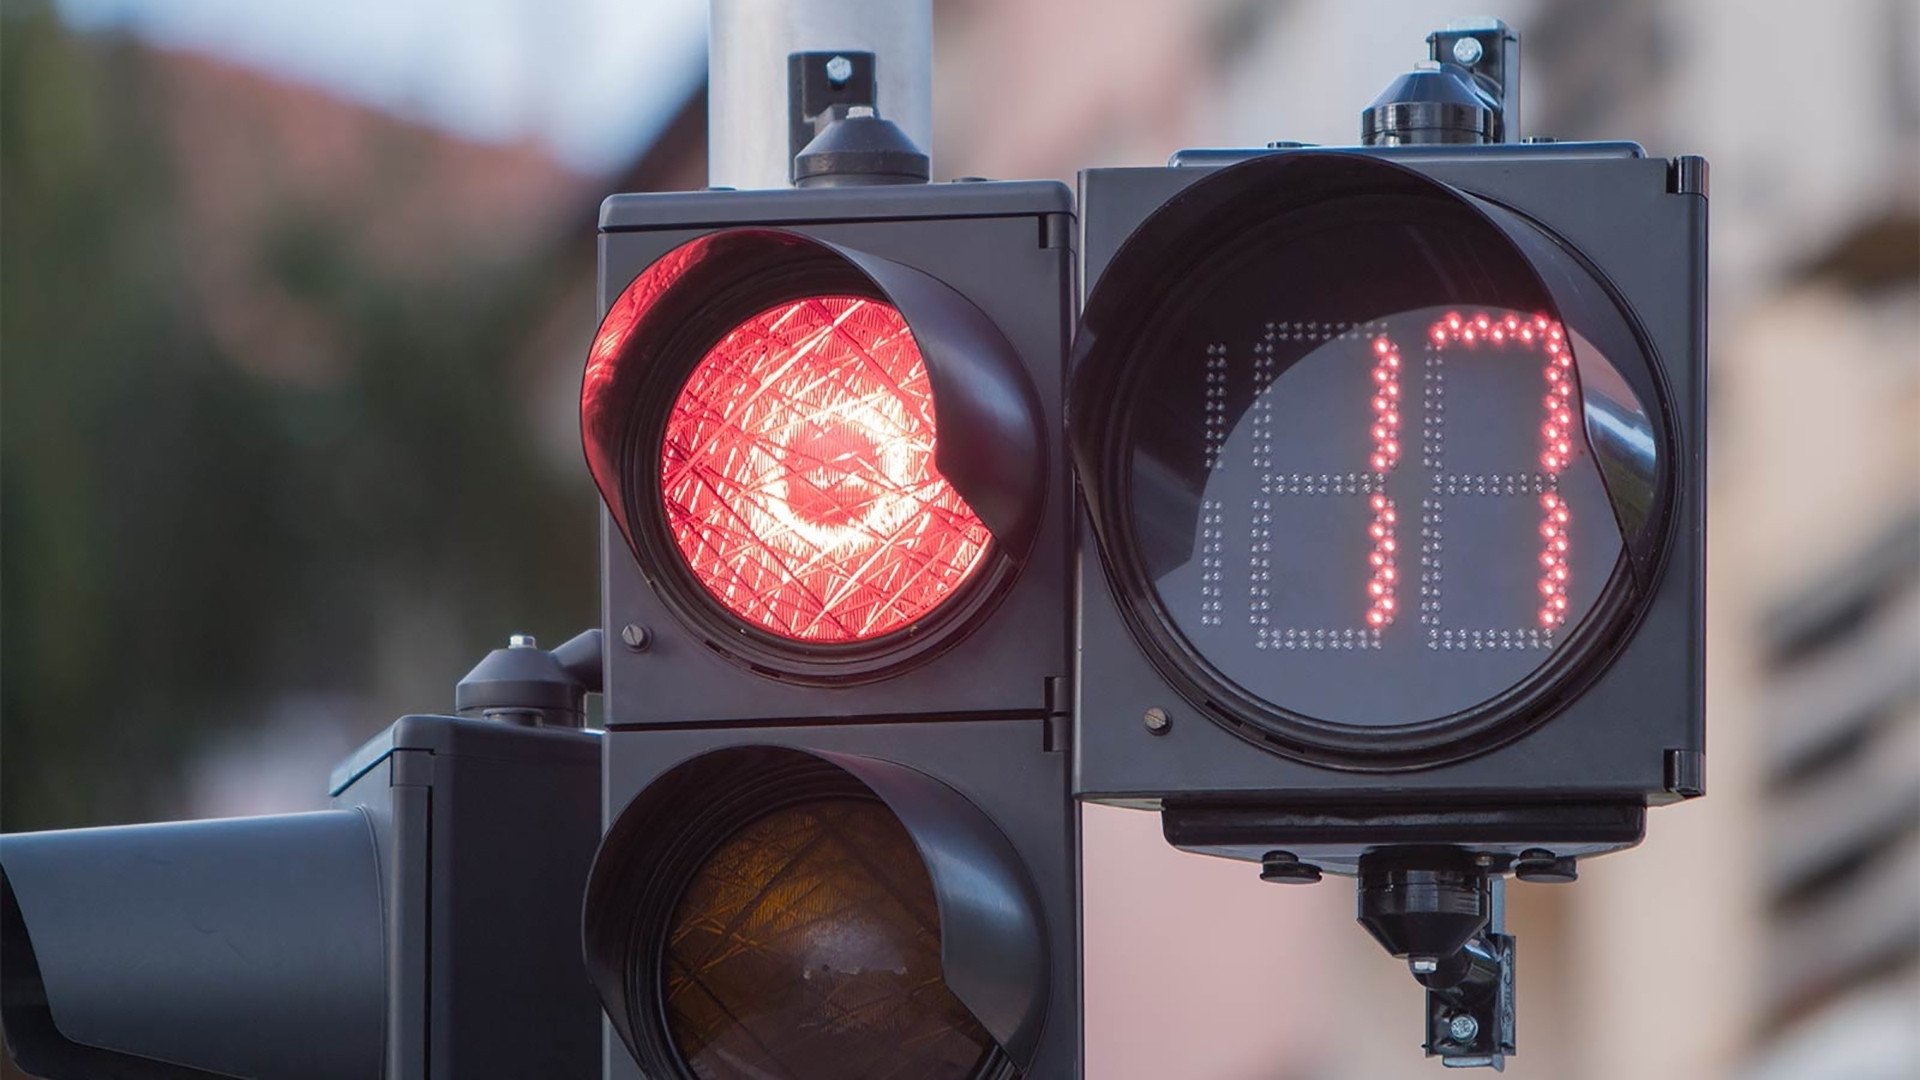 Countdown ai semafori, vicesindaco al M5S: “Non siamo i paladini di chi commette un’infrazione”